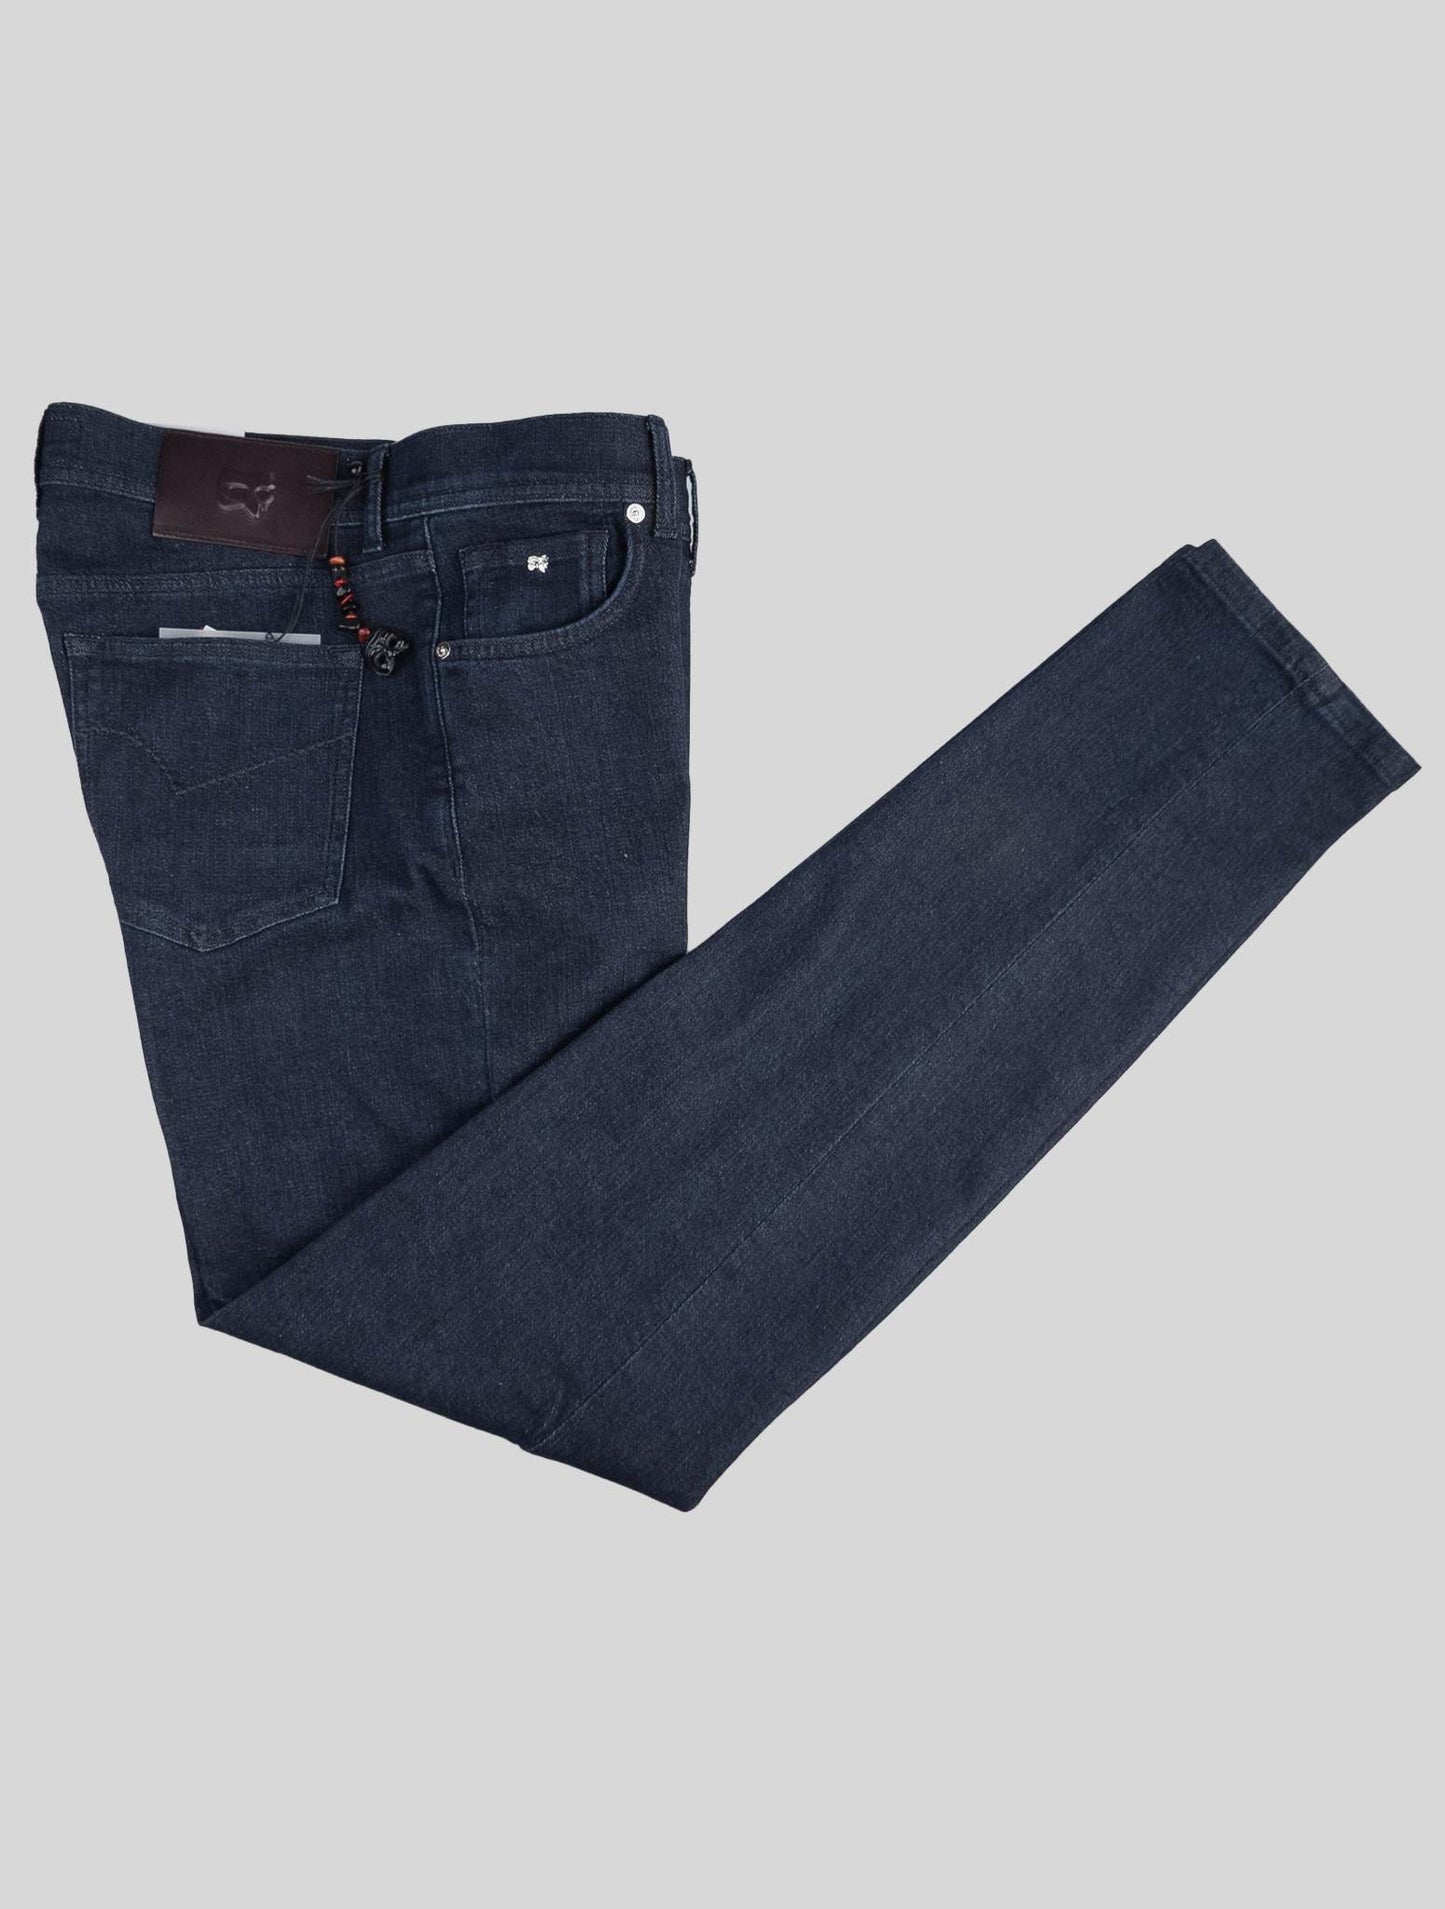 Marco Pescarolo Cachemira de algodón azul oscuro Ea Jeans